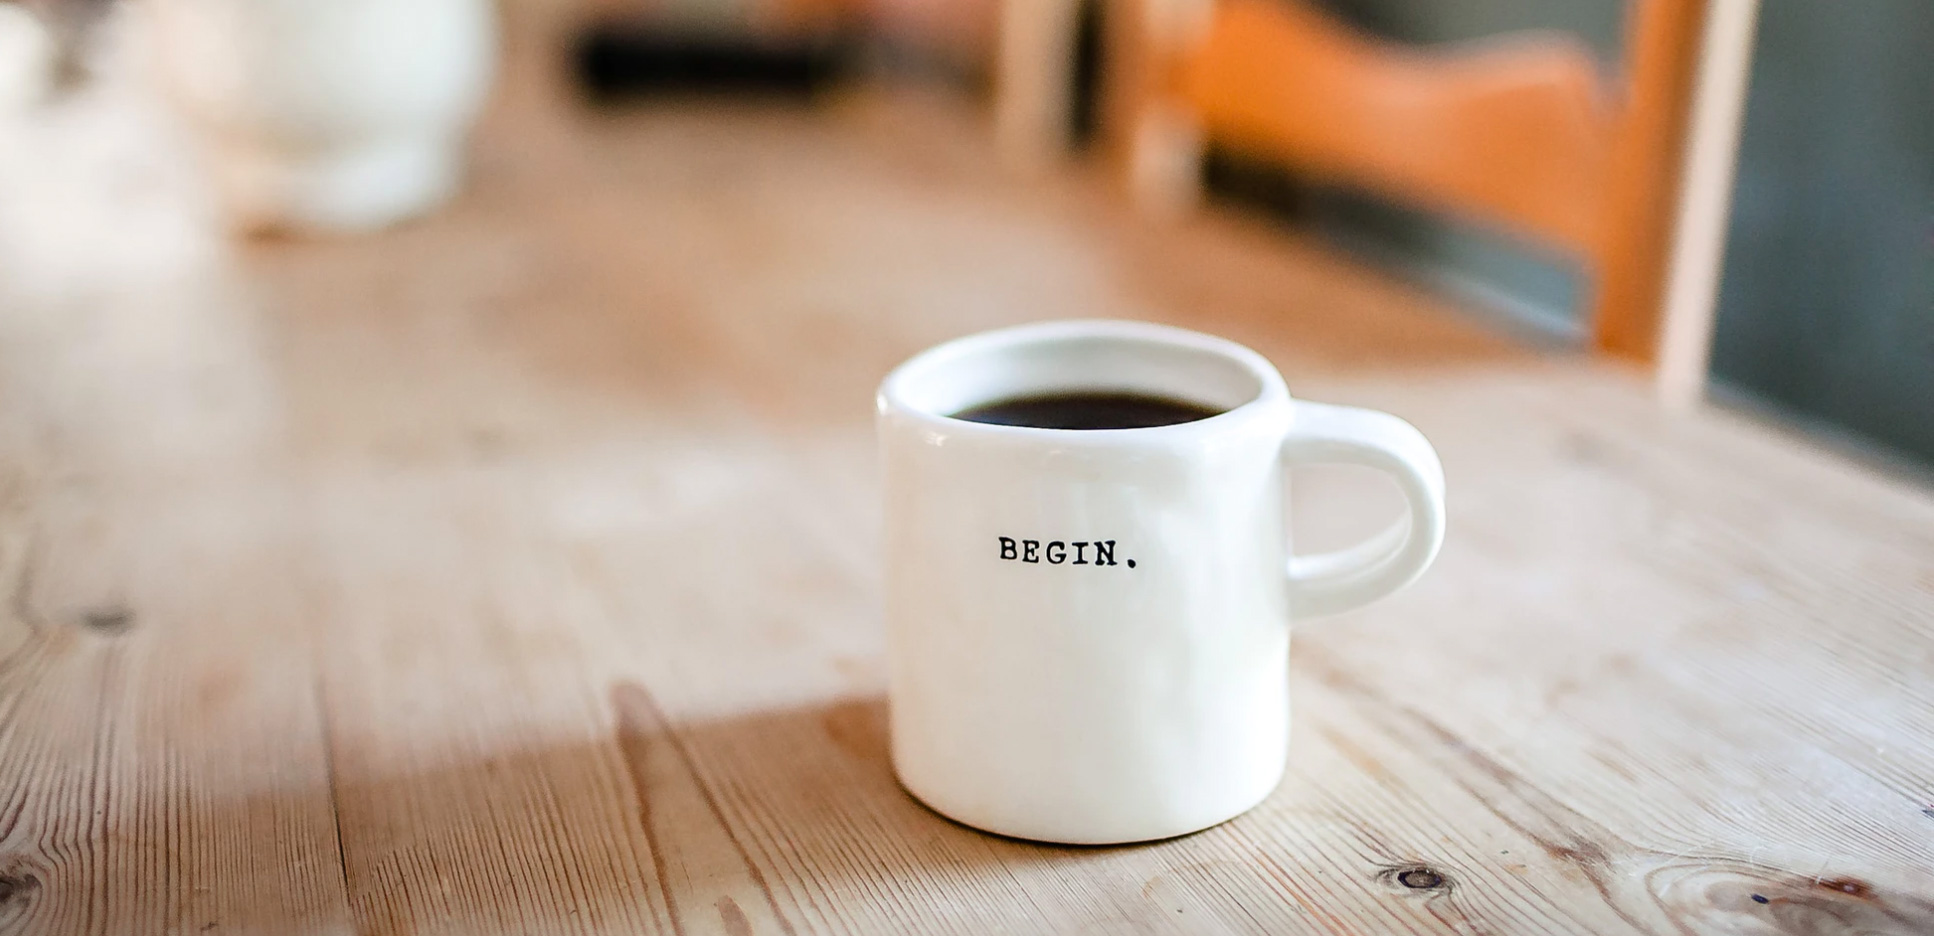 A coffee mug that says begin on it 